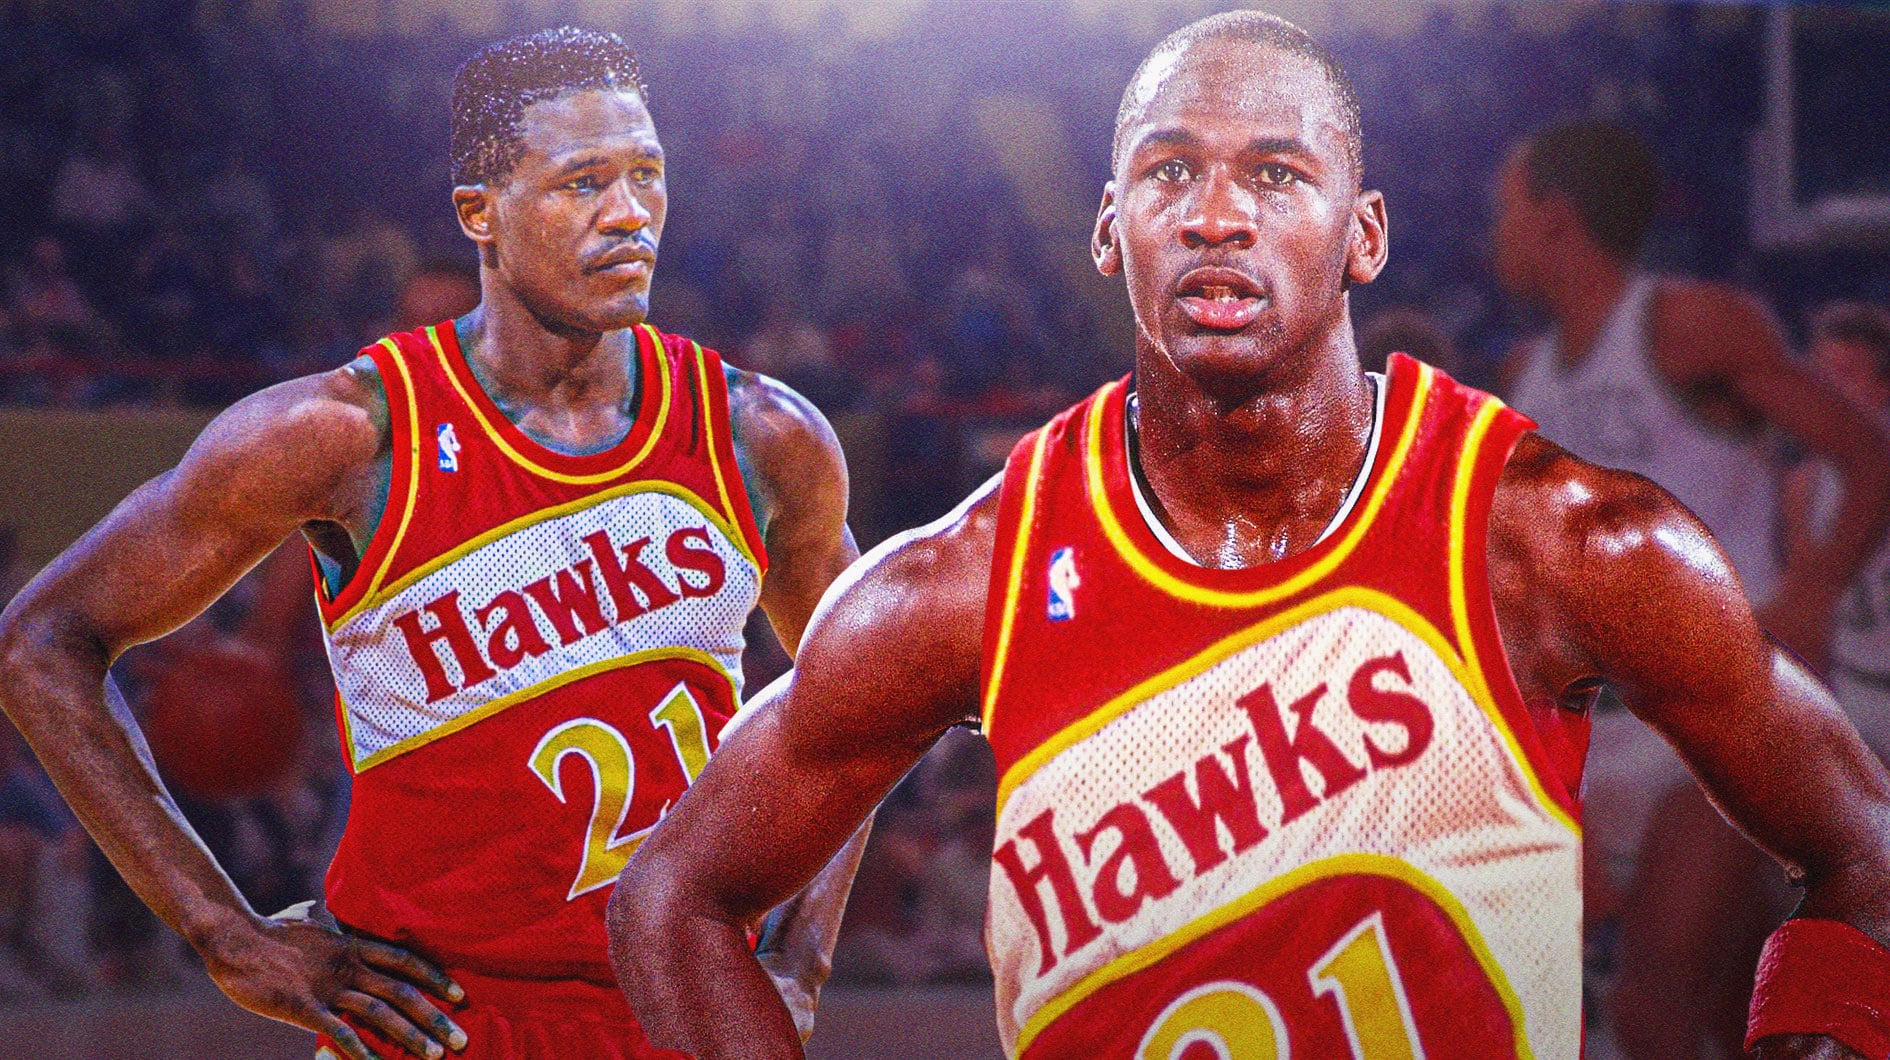 Michael Jordan in an 80s era Hawks jersey along with Dominique Wilkins also in Hawks jersey.